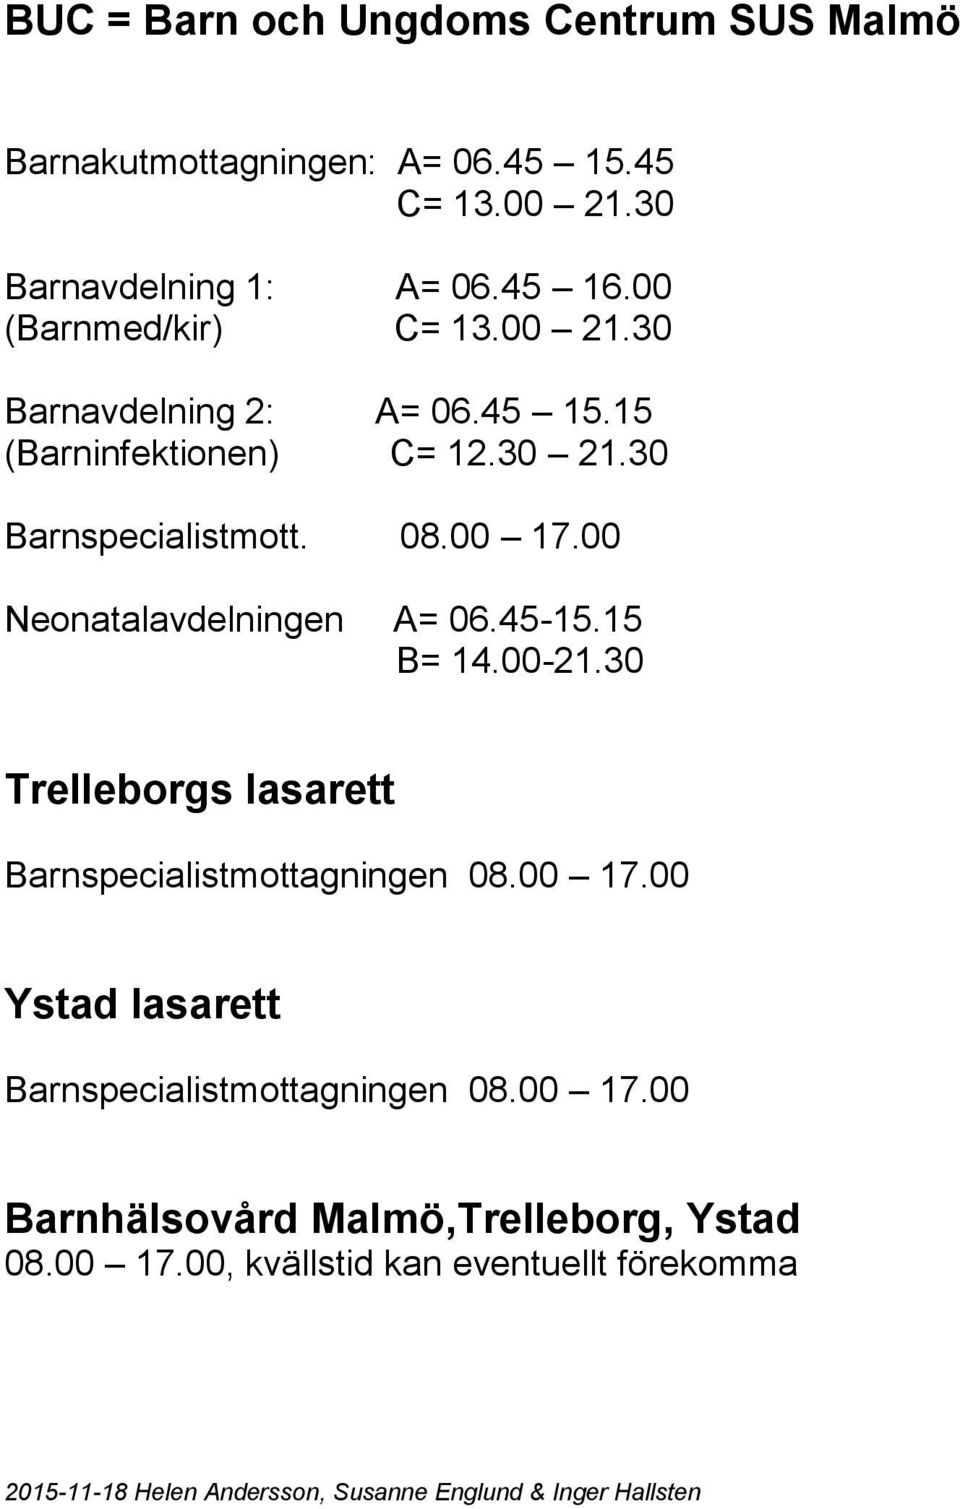 -. B=.00-.0 Trelleborgs lasarett Barnspecialistmottagningen 0.00.00 lasarett Barnspecialistmottagningen 0.00.00 Barnhälsovård Malmö,Trelleborg, 0.